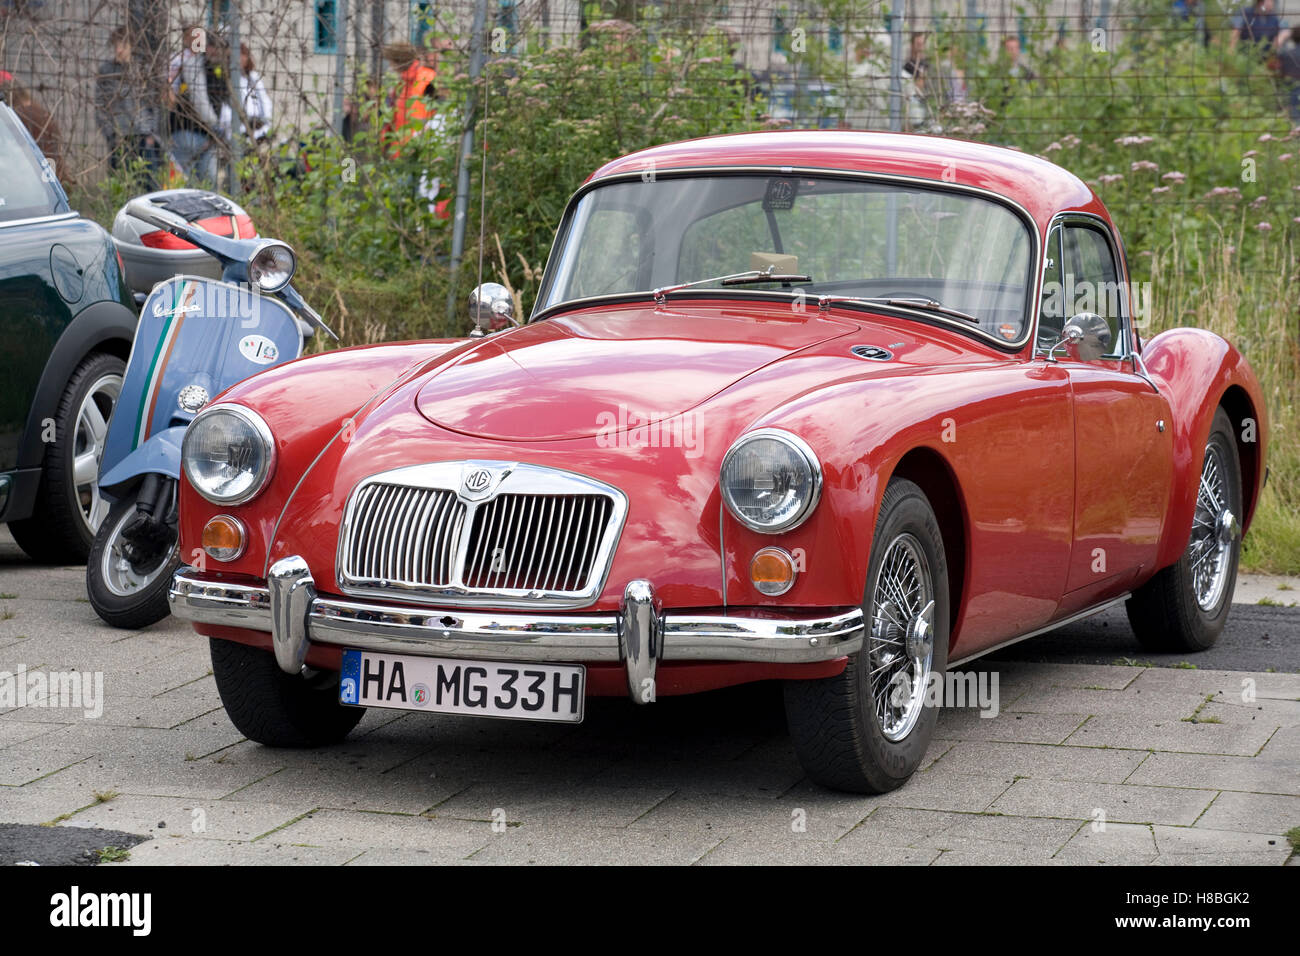 Alemania, en Renania del Norte-Westfalia, participante de un rally de coches de época, un MG desde 1960. Foto de stock